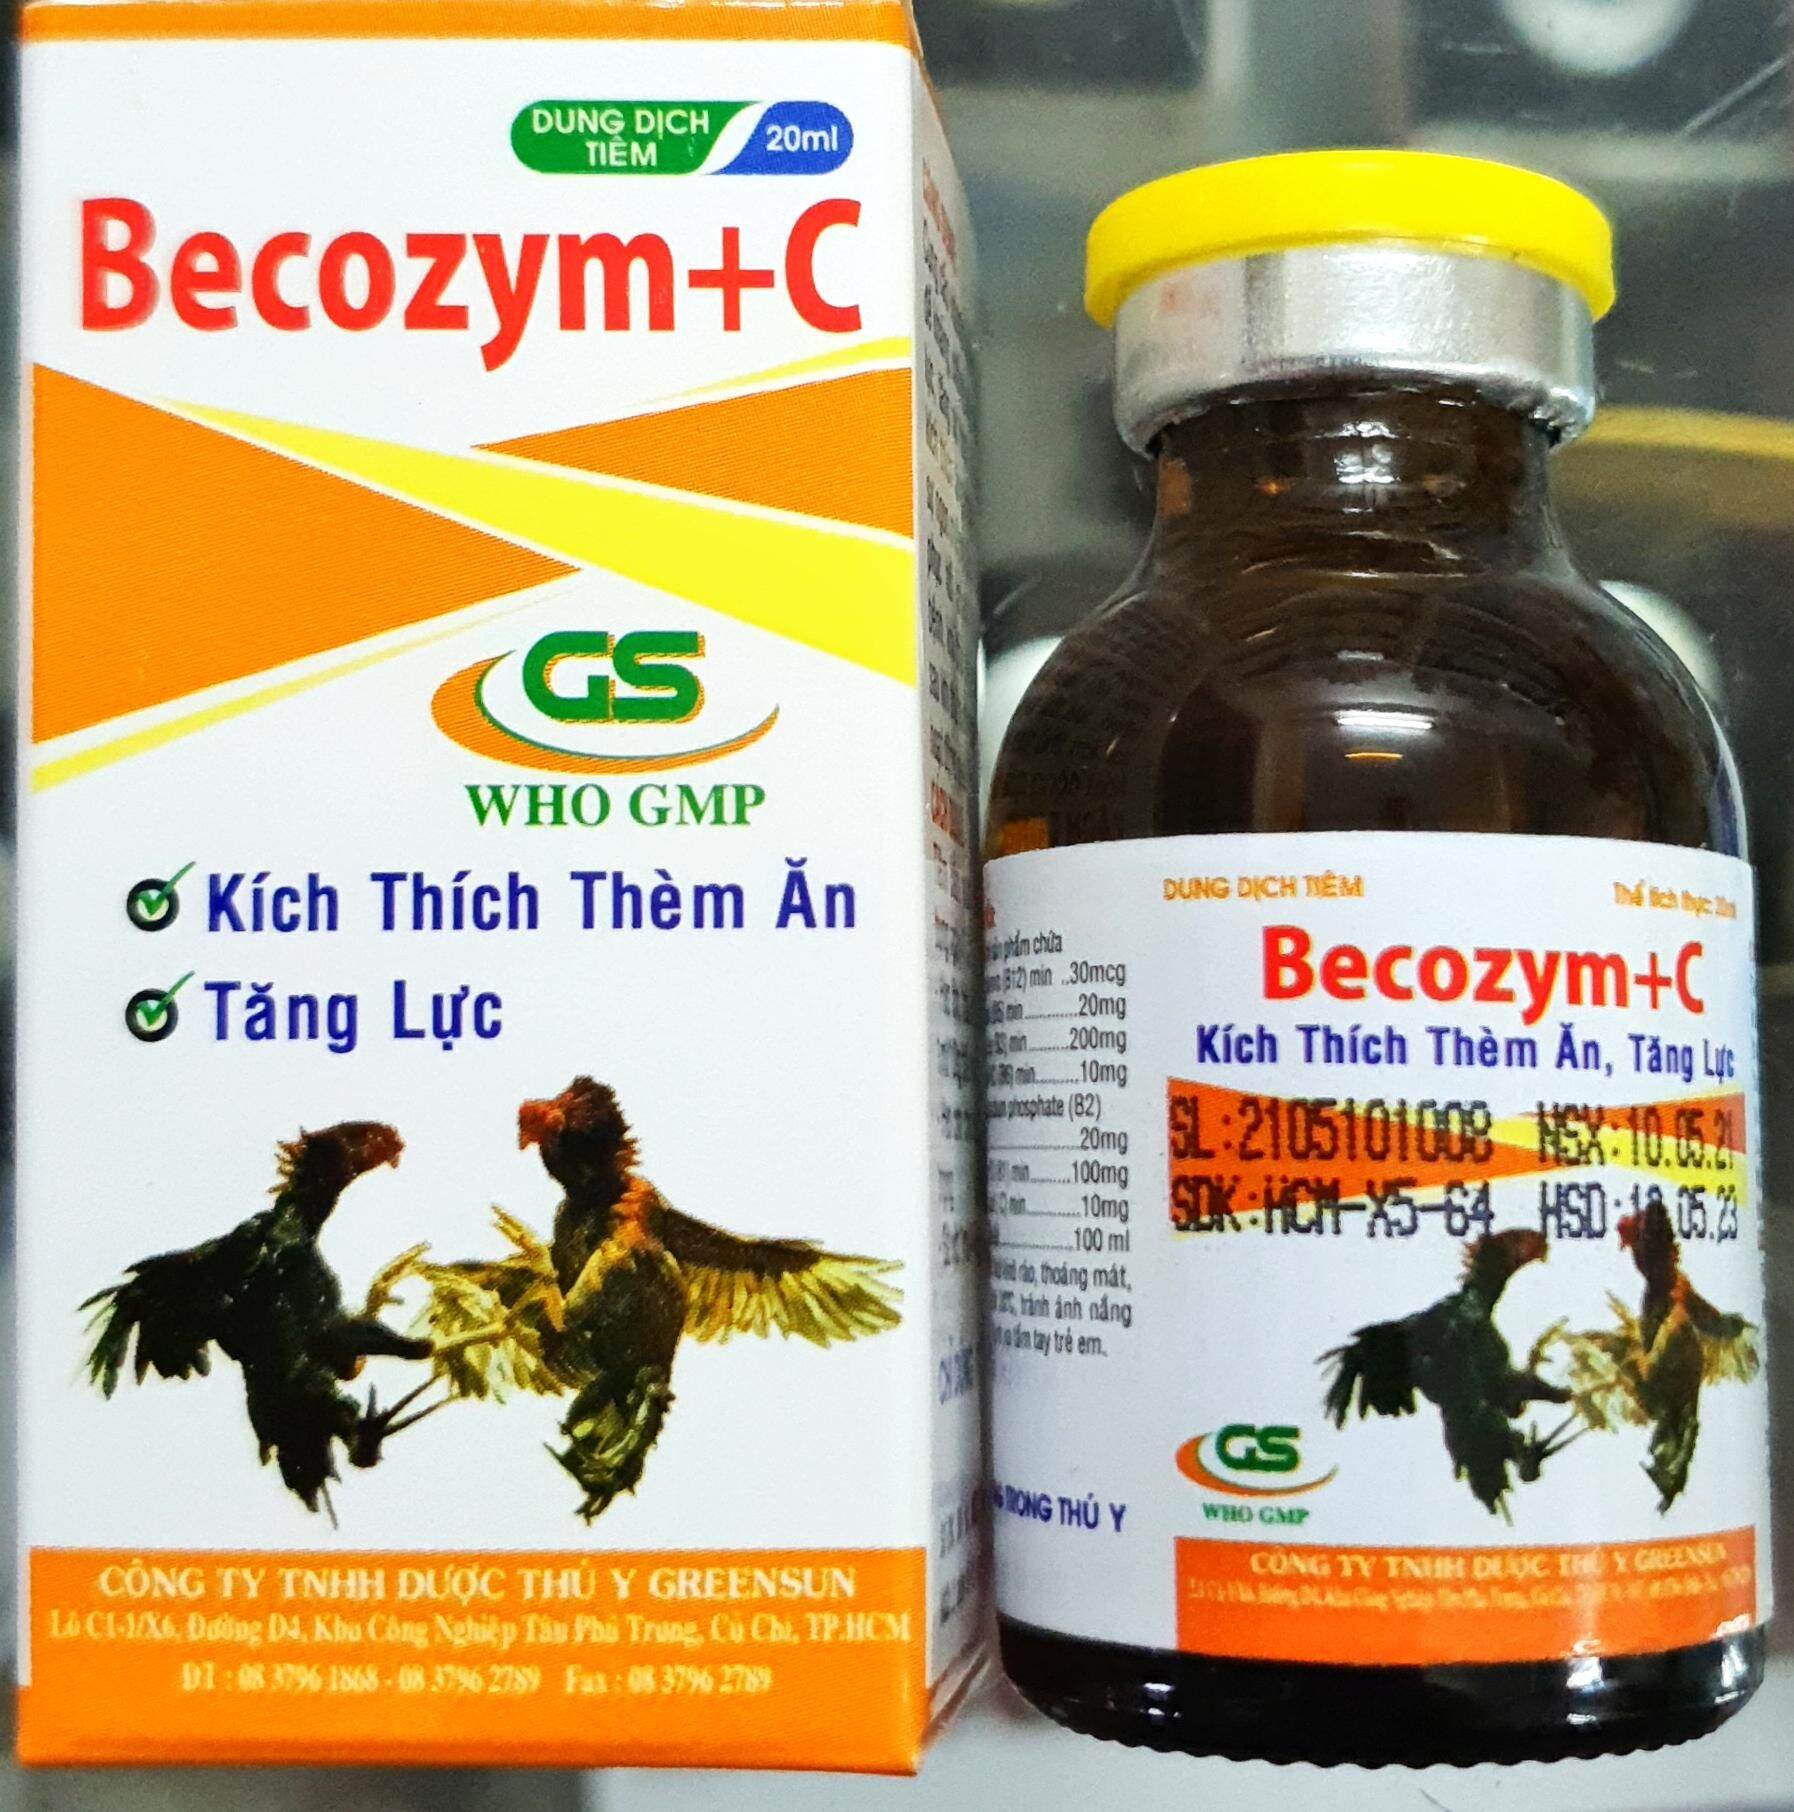 Becozym + C (20ml - Sản phẩm dành riêng cho gà đá) - Vitamin tổng hợp, tăng lực, tăng bo, bổ máu, kích thích thèm ăn